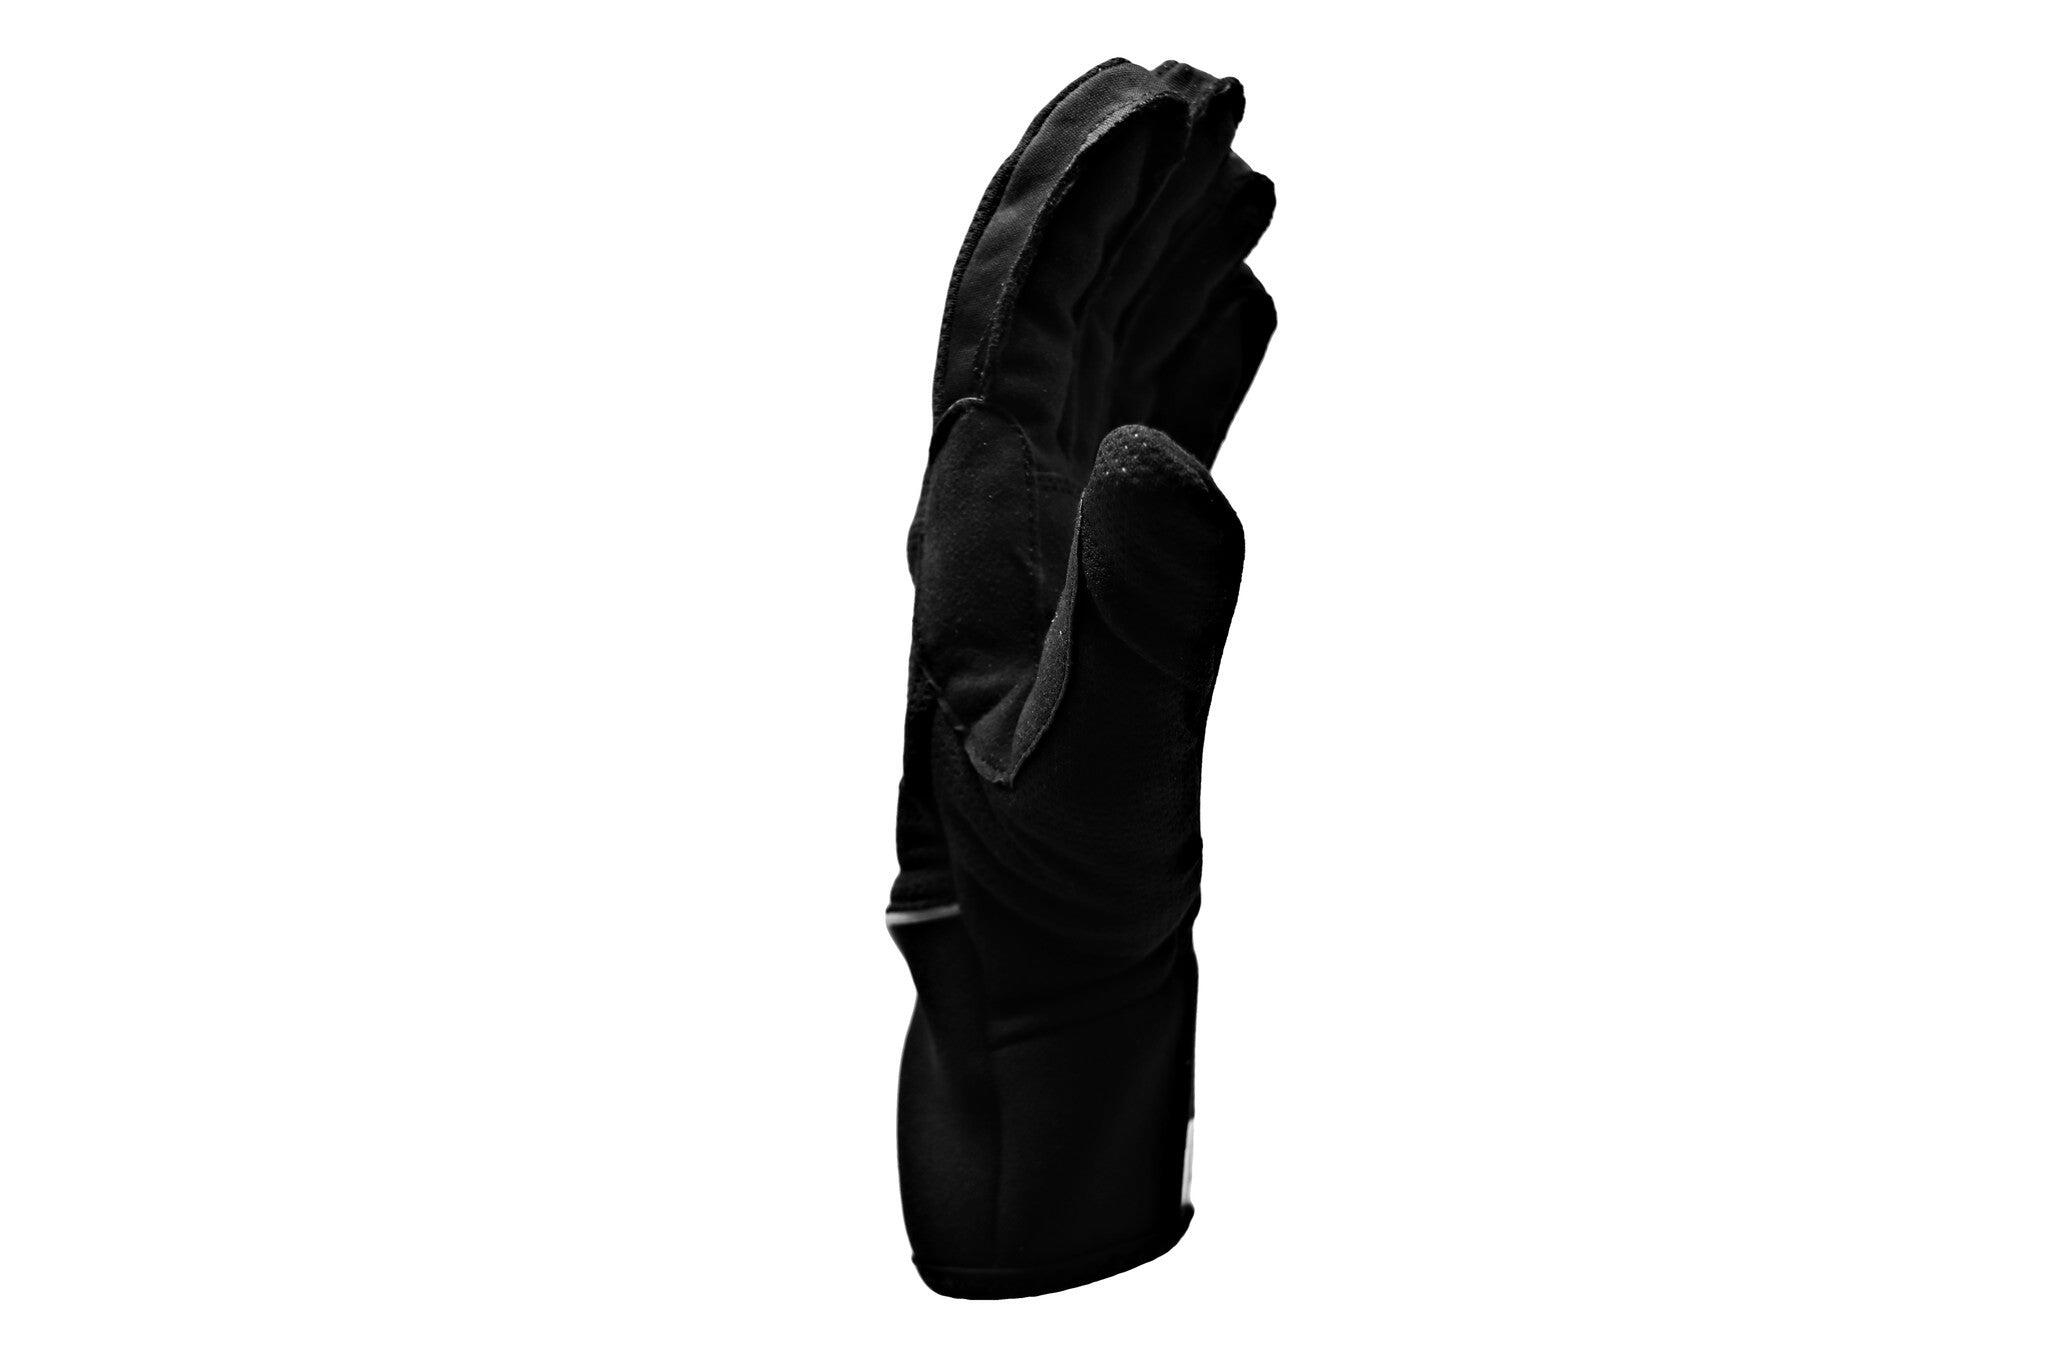  NBG-03 cross-country ski gloves 2/5